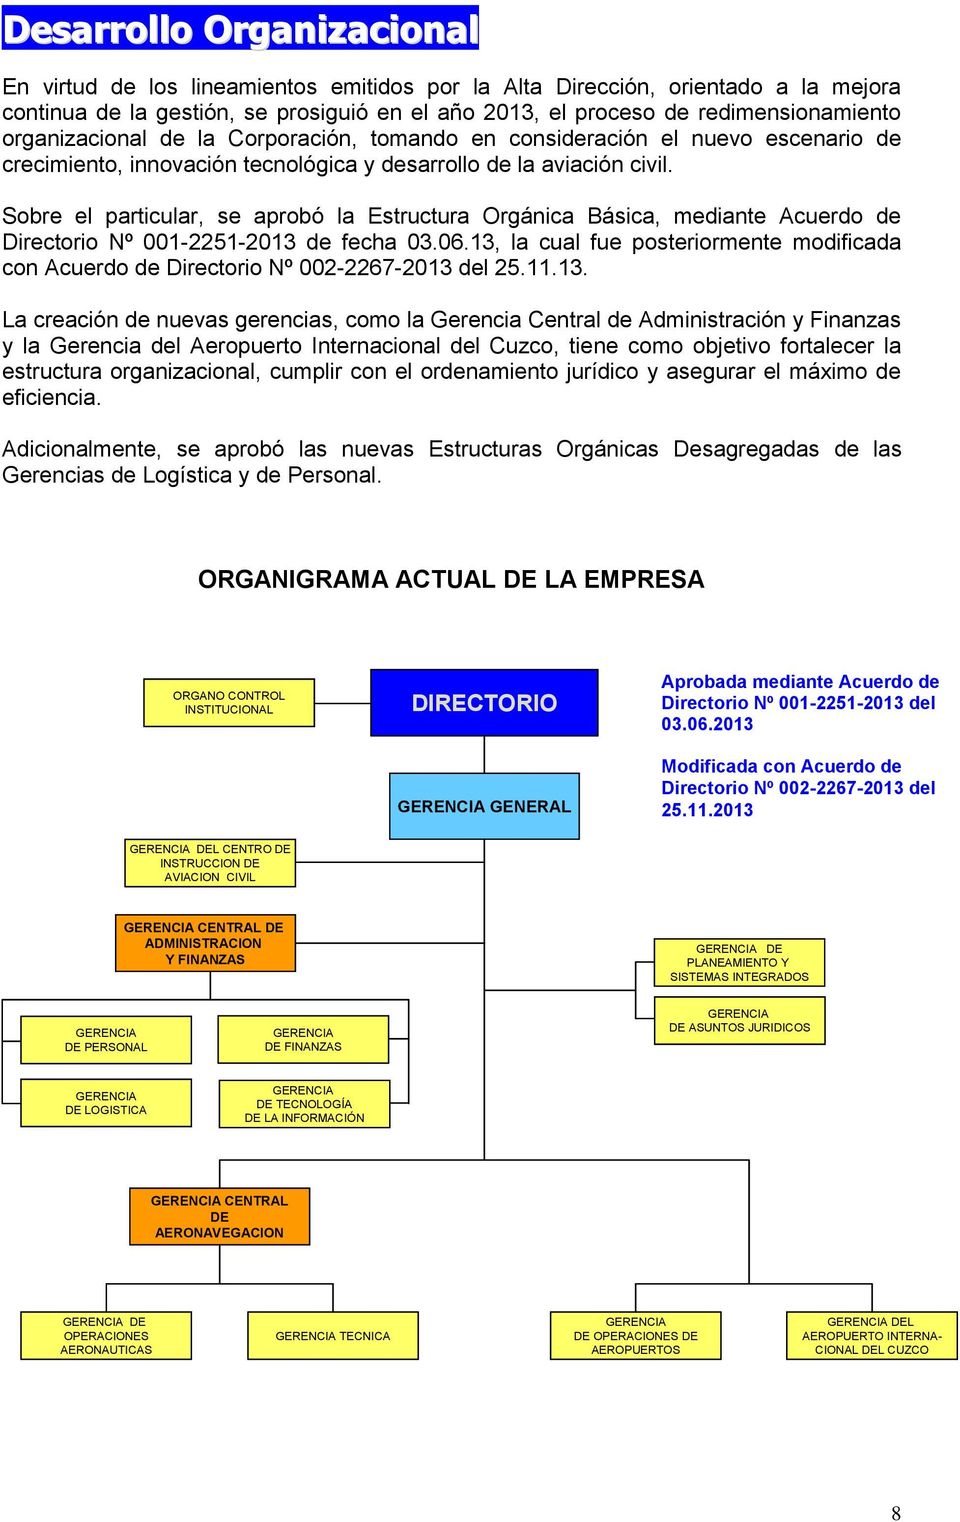 Sobre el particular, se aprobó la Estructura Orgánica Básica, mediante Acuerdo de Directorio Nº 001-2251-2013 de fecha 03.06.